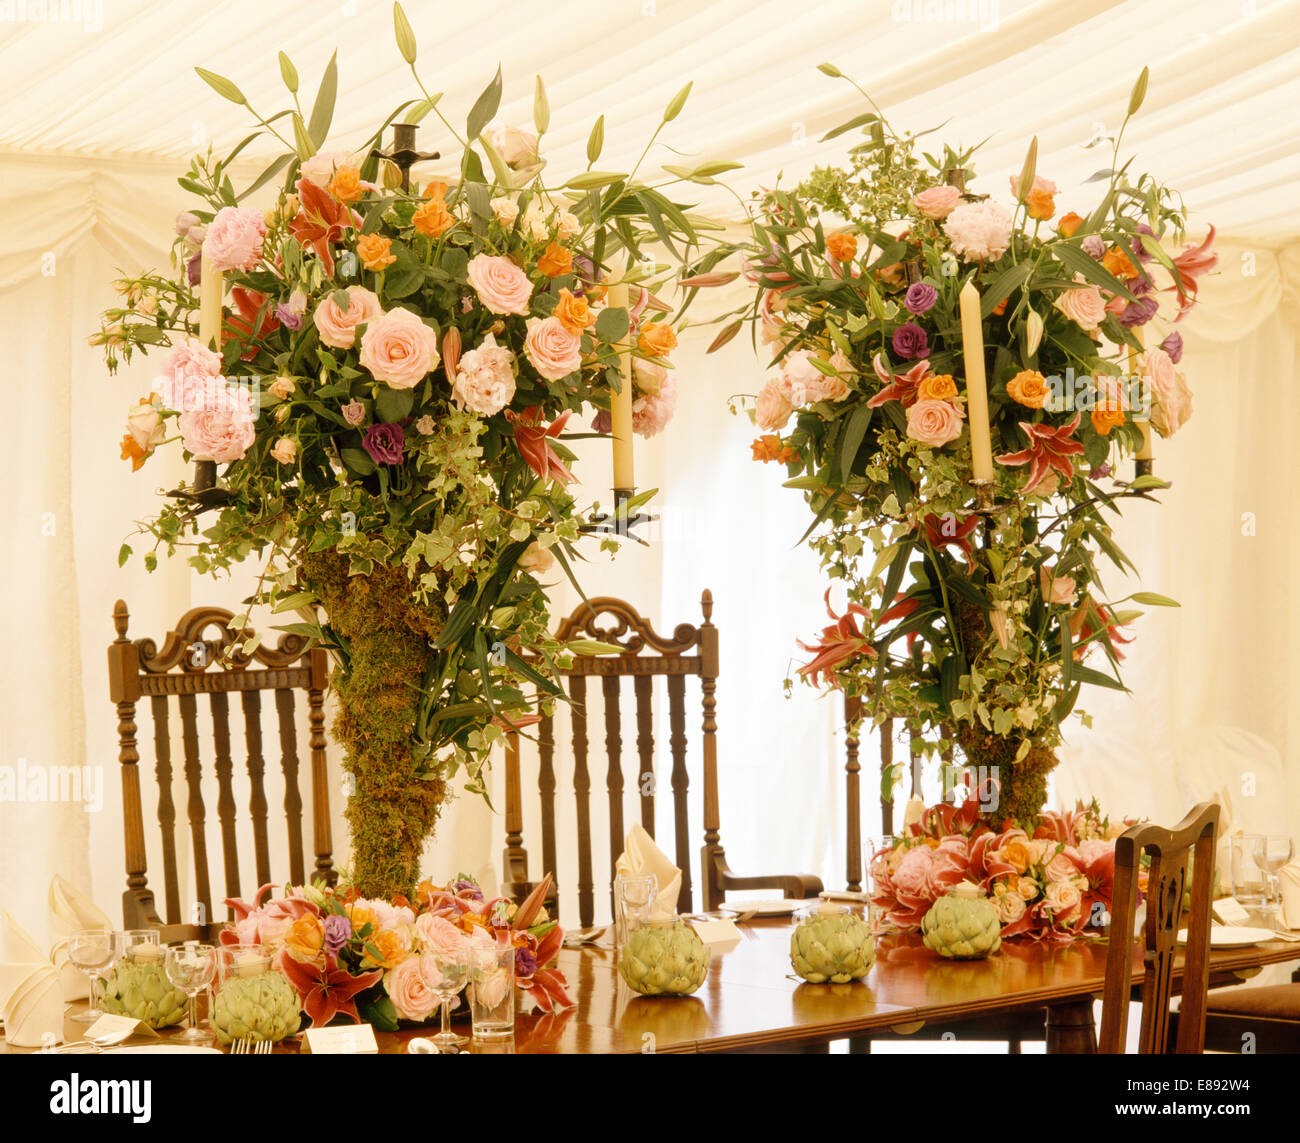 Rosa Rosen in üppige Blumenarrangements auf Tisch im Festzelt geschmückt für eine Hochzeit Stockfoto